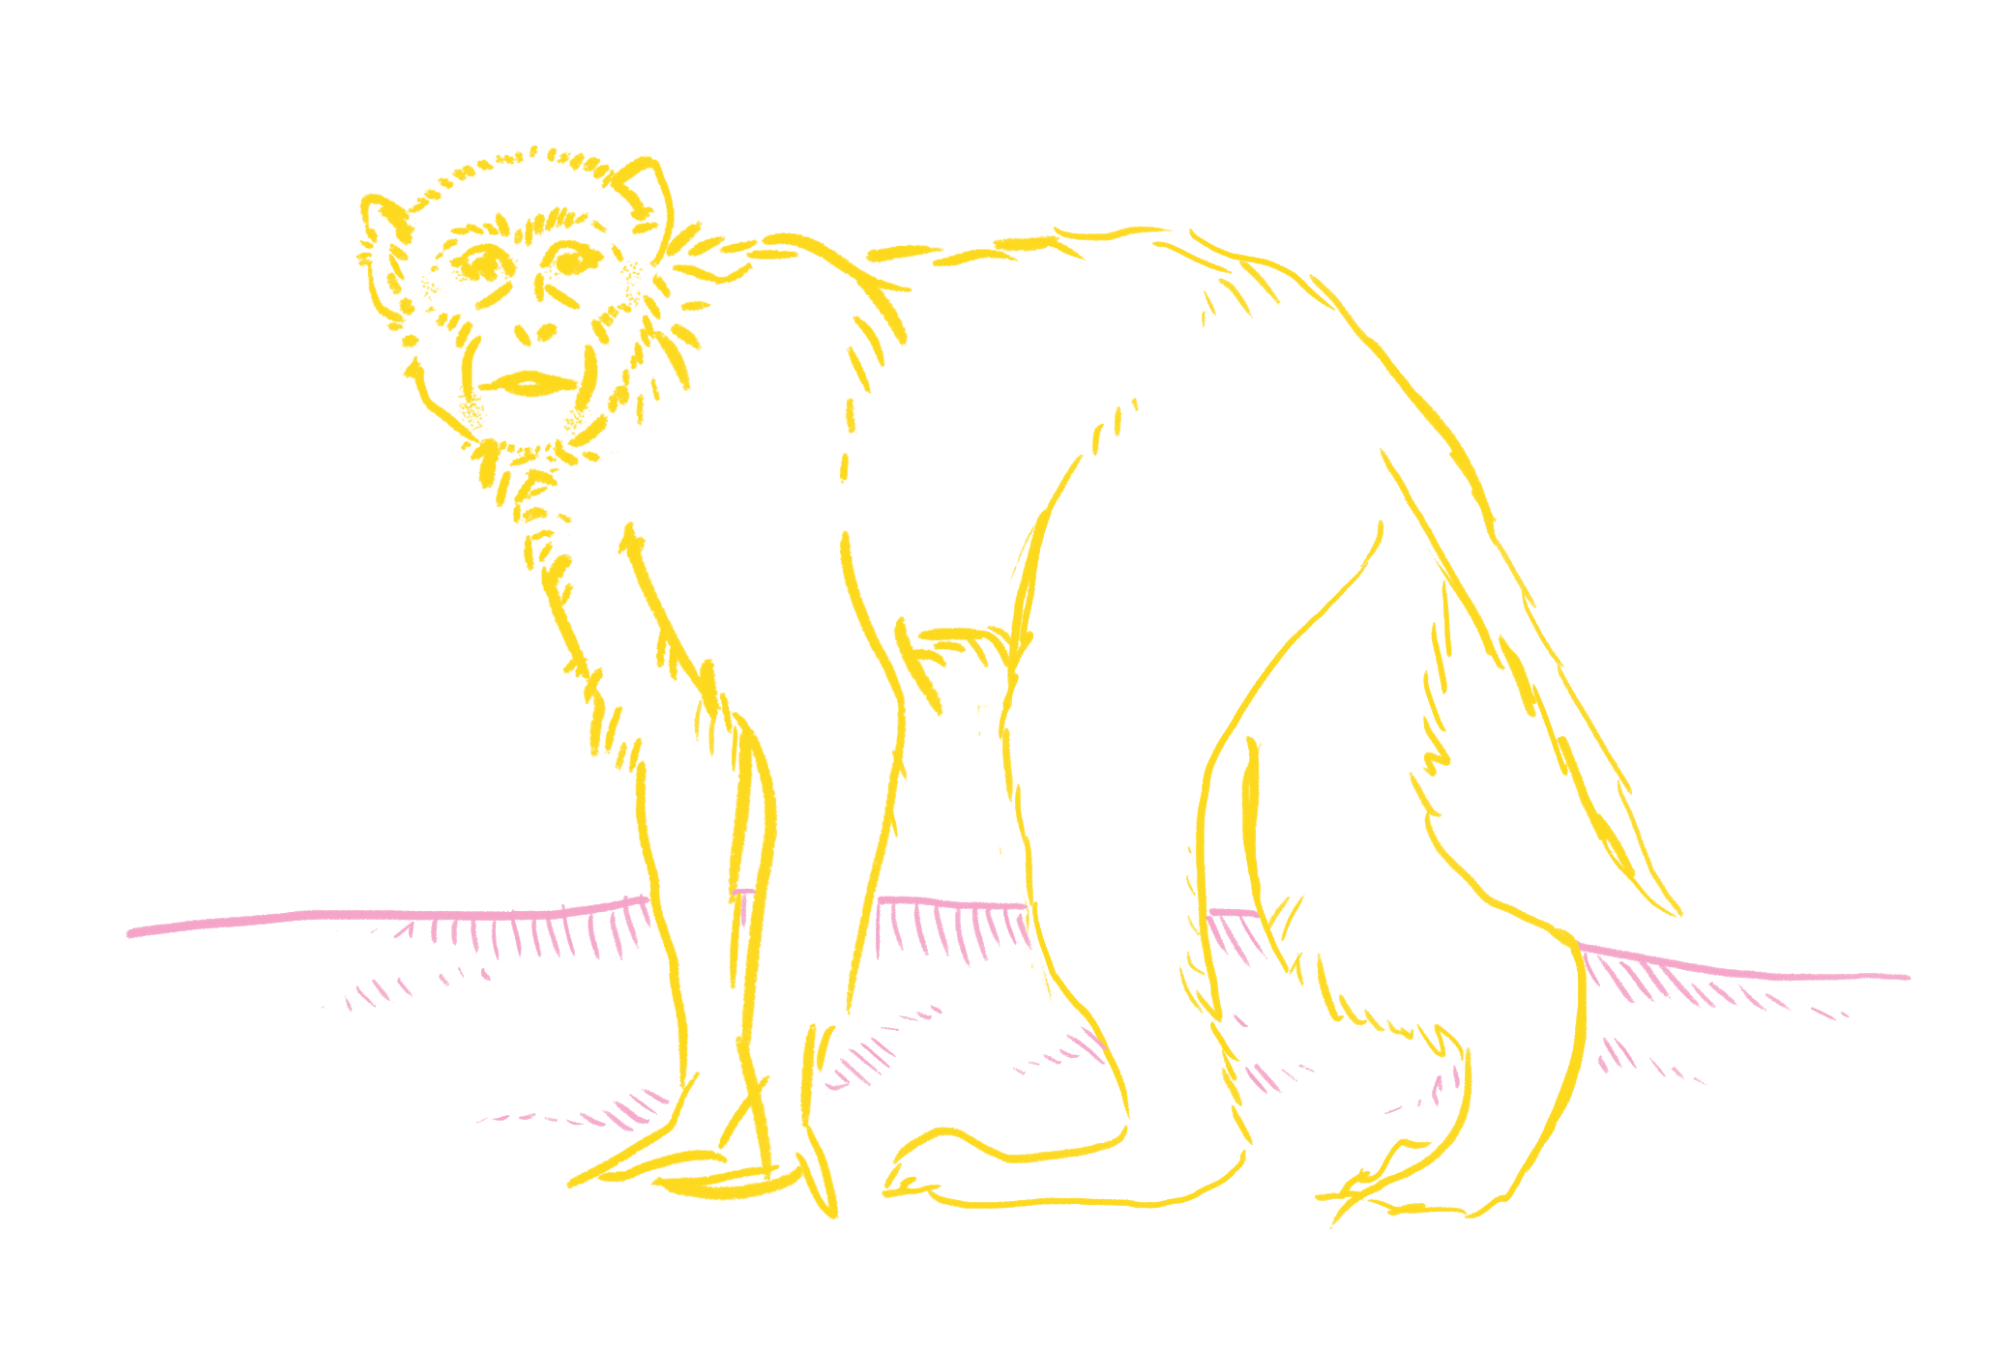 Image: A loose sketch of a macaque